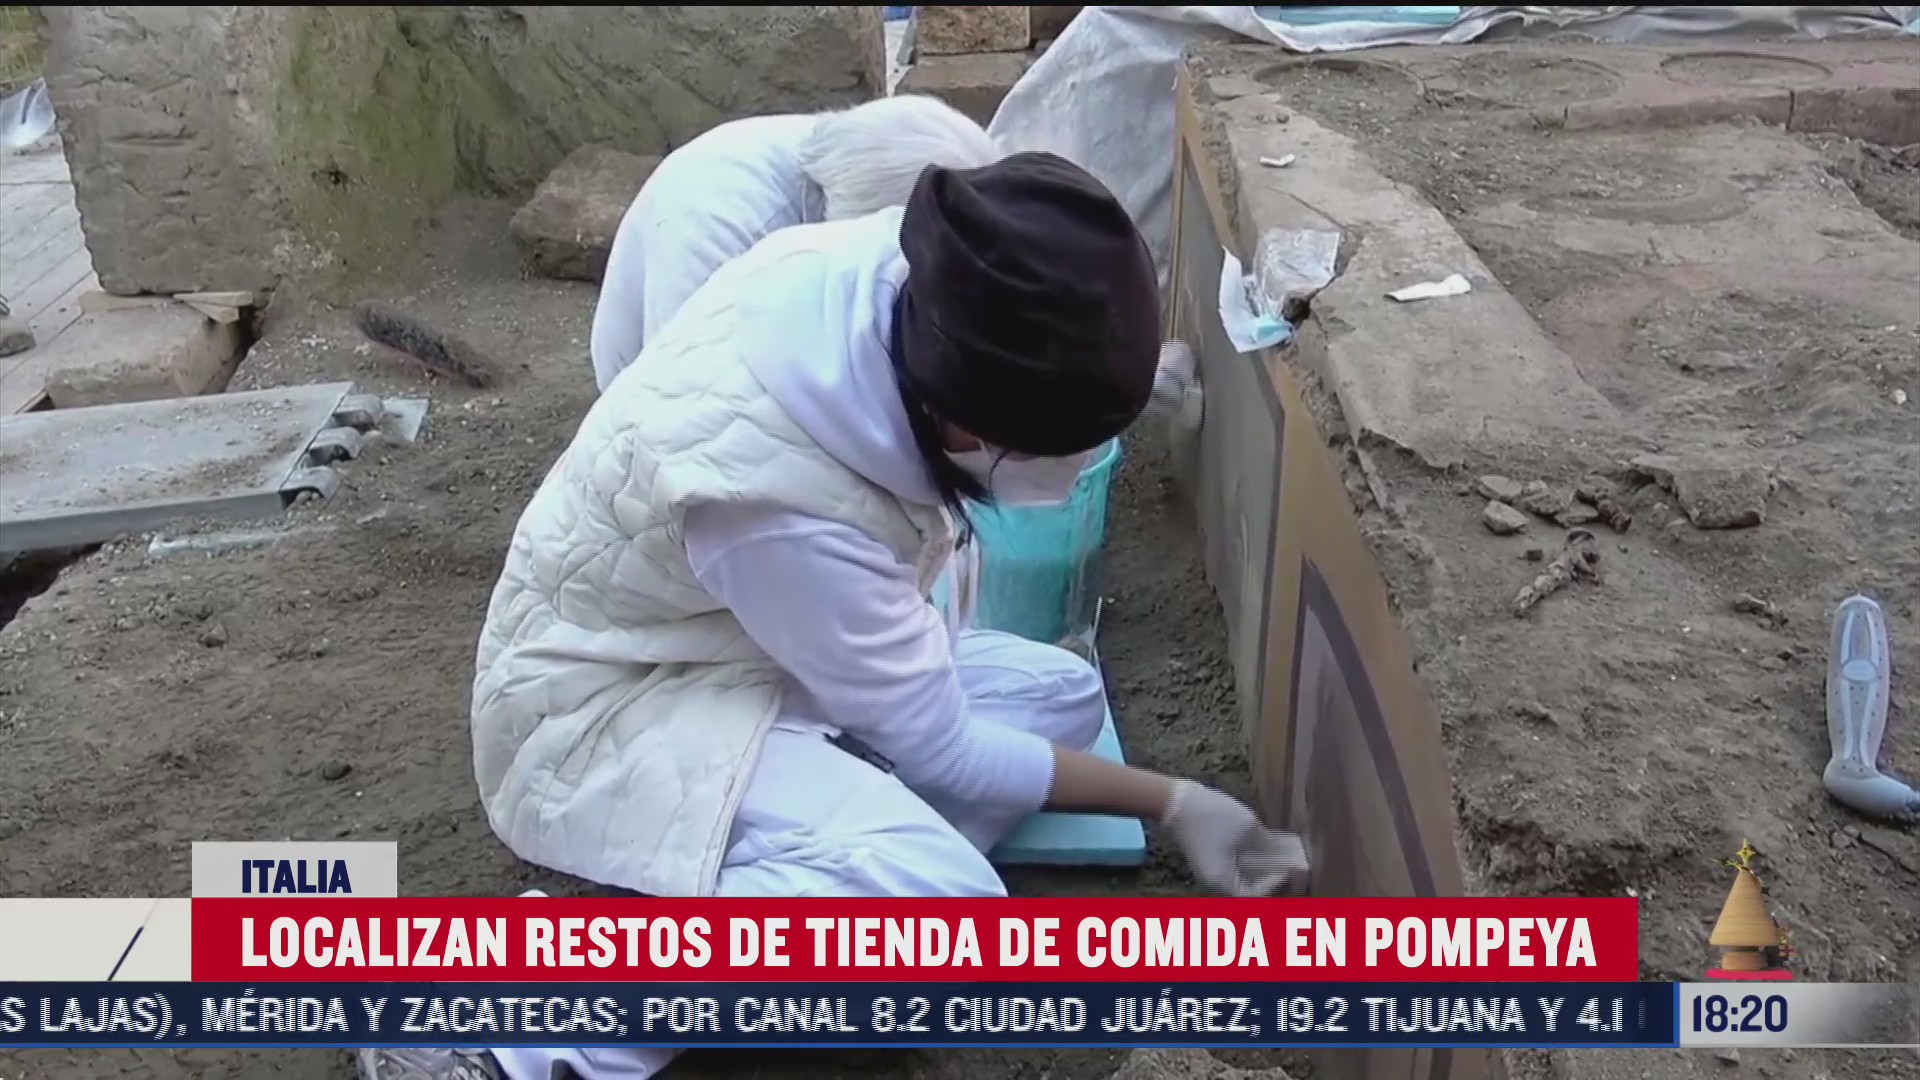 arqueologos localizan tienda de comida callejera enterrada tras erupcion del vesubio